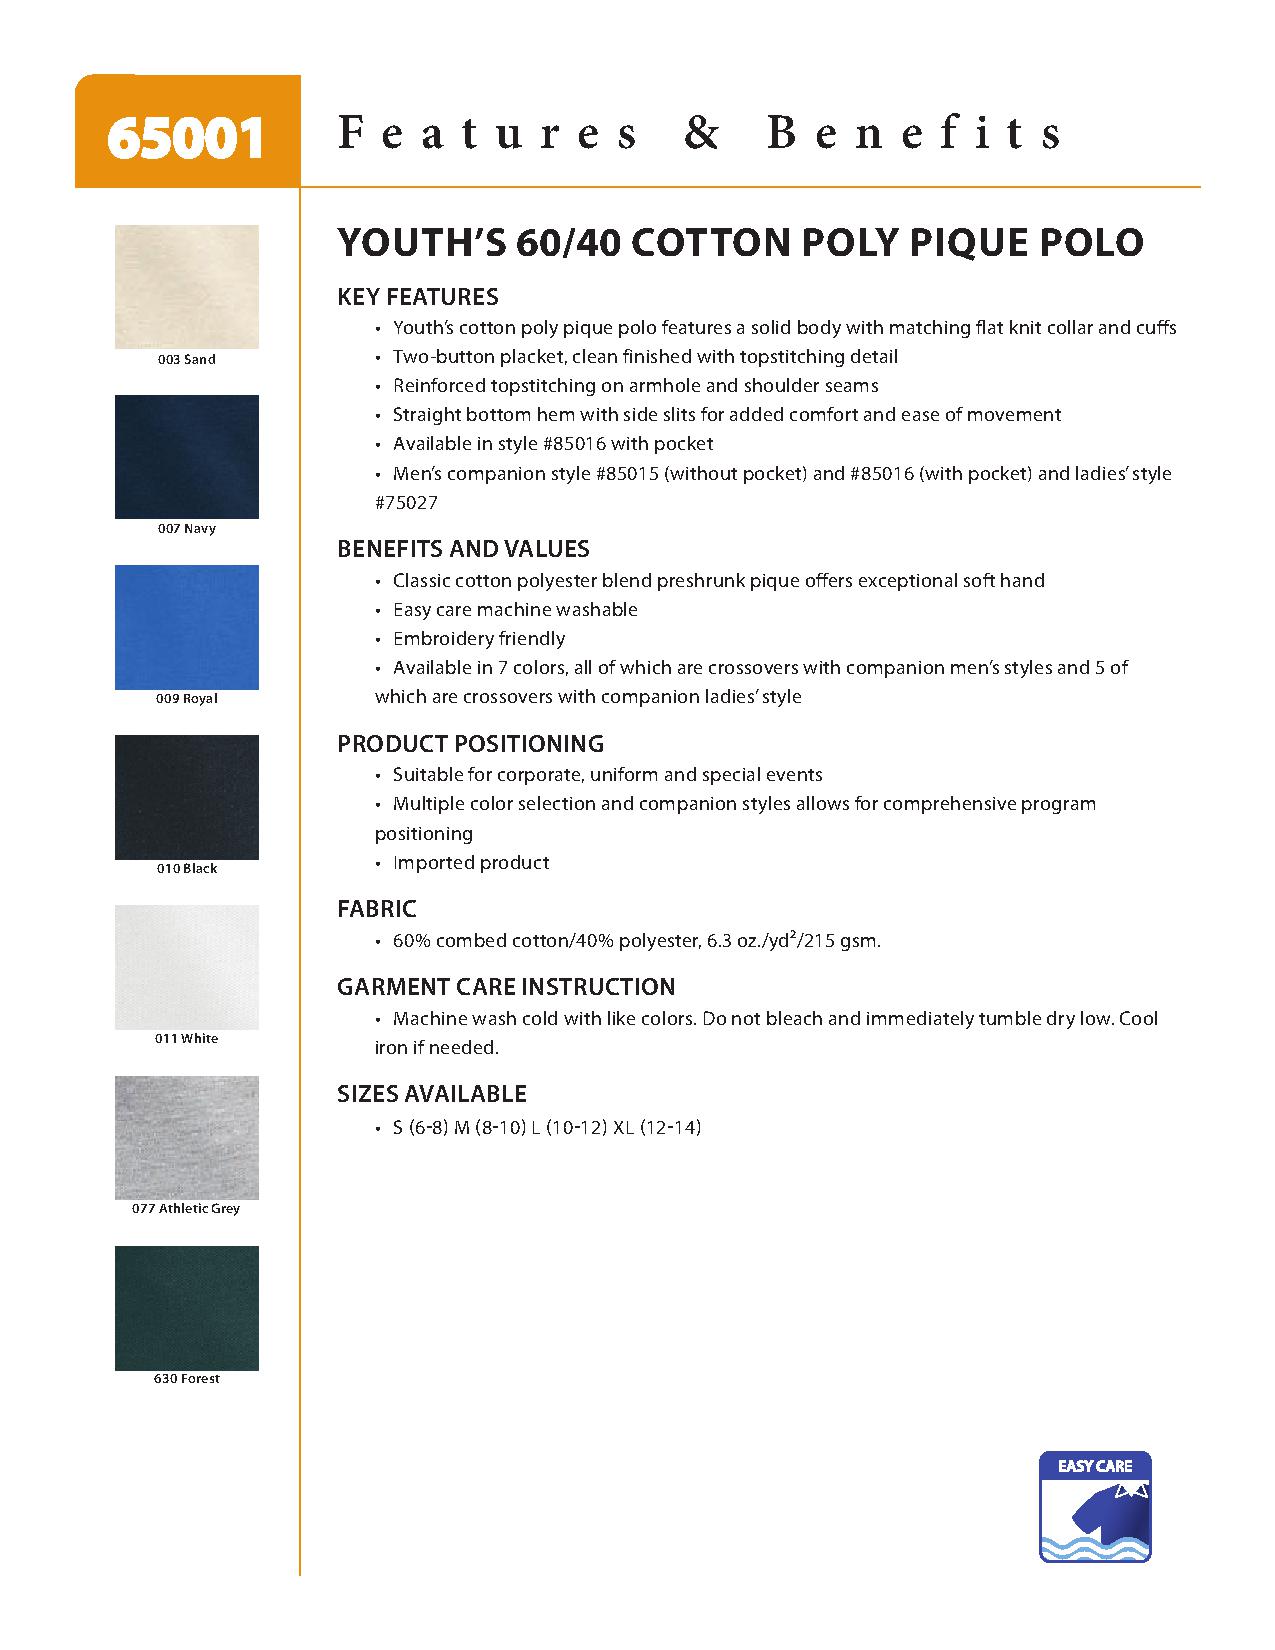 Ash City Pique 65001 - Youth 60/40 Cotton Poly Pique Polo